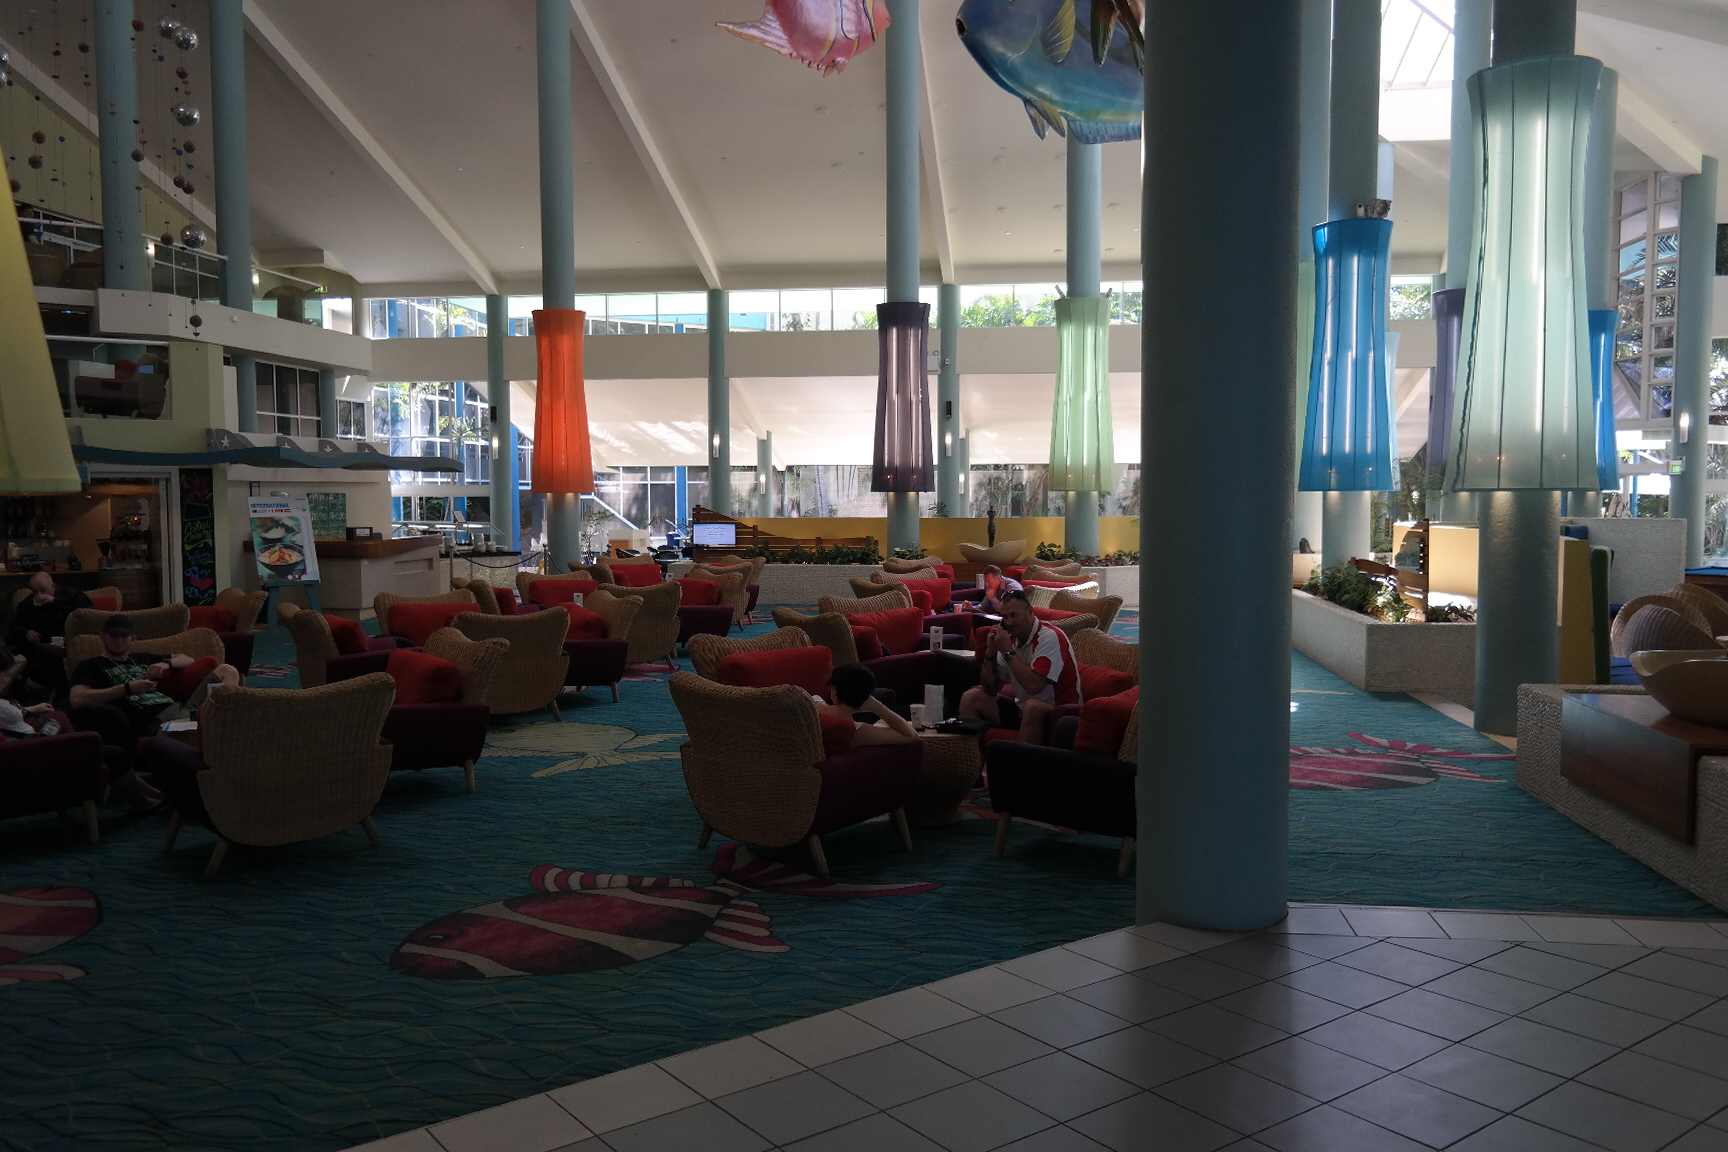 Daydream Island Whitsundays Cruises hotel Resort übernachten Ausflug Bootfahren Baby Elternzeit Fernreise Australien Reiseblog